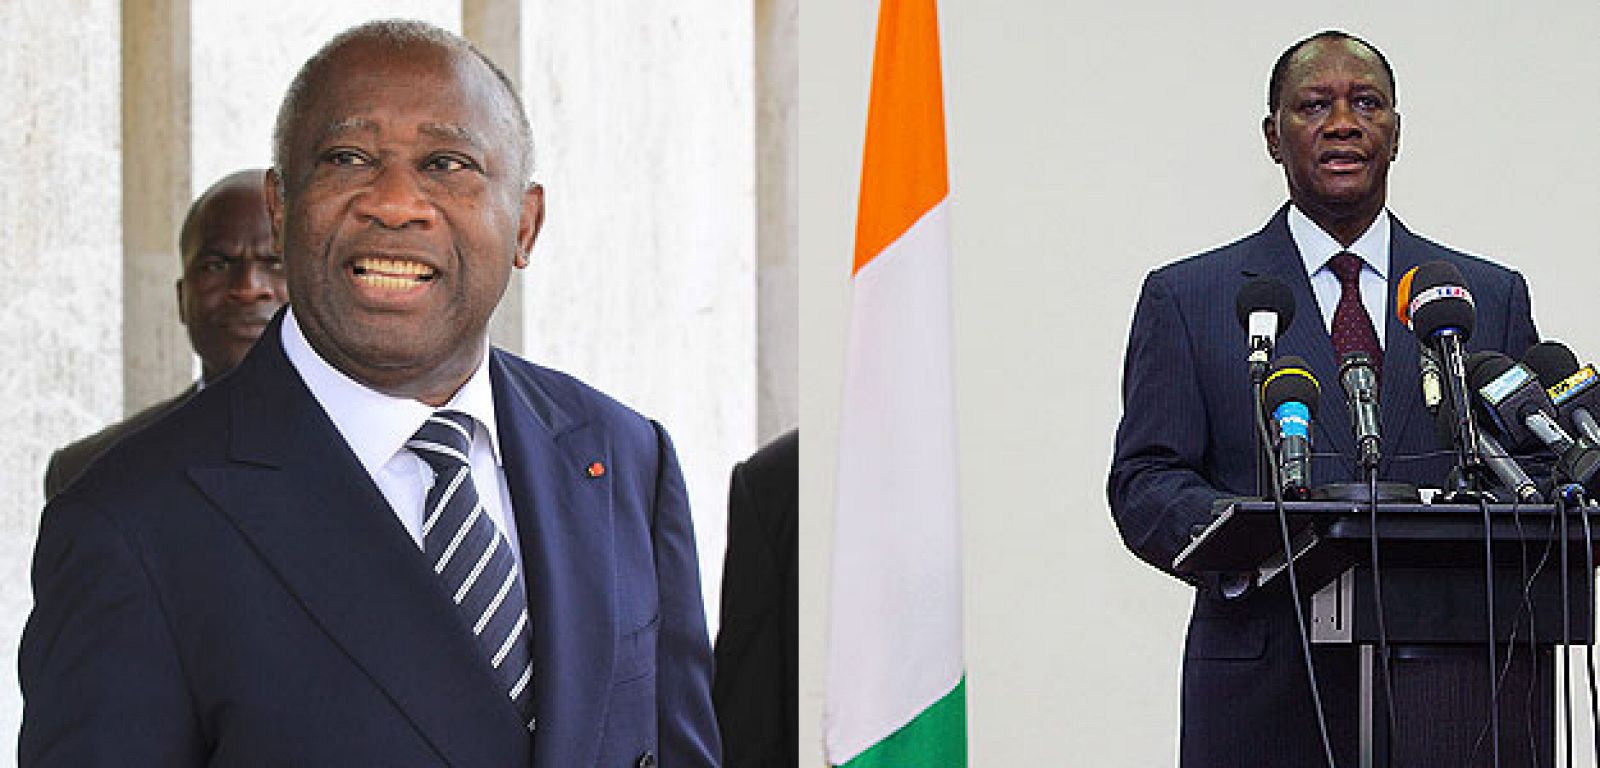 El presidente de Costa de Marfil, Laurent Gbagbo (dcha), no reconoce la victoria de su rival, Alassane Ouattara (izq),  en las últimas elecciones.